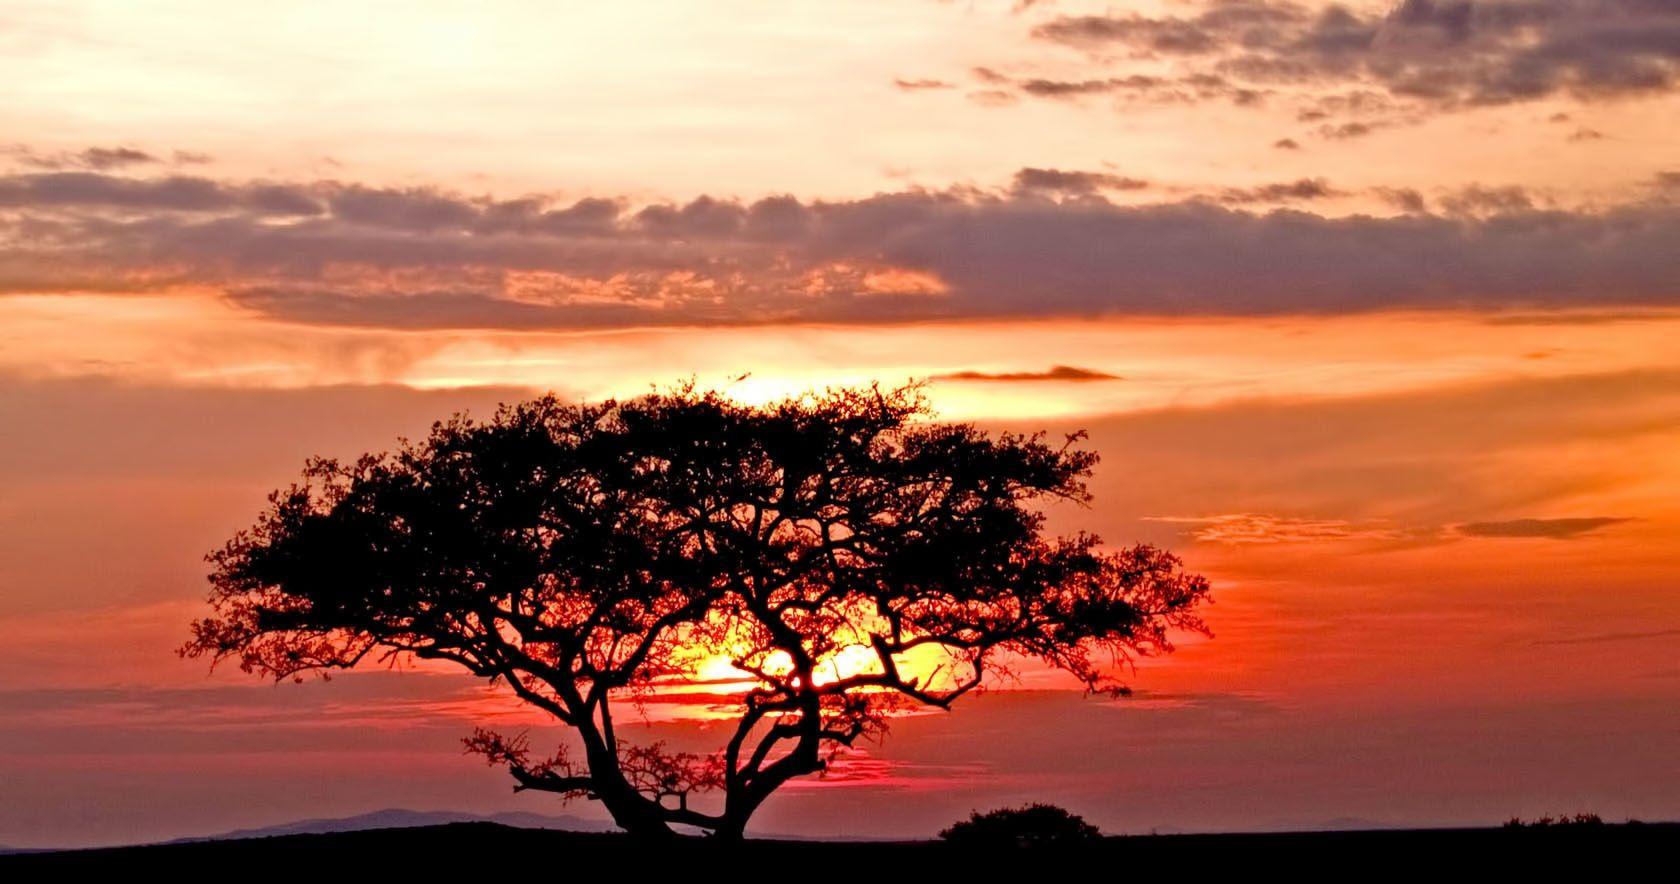 Sunset in the Serengeti!